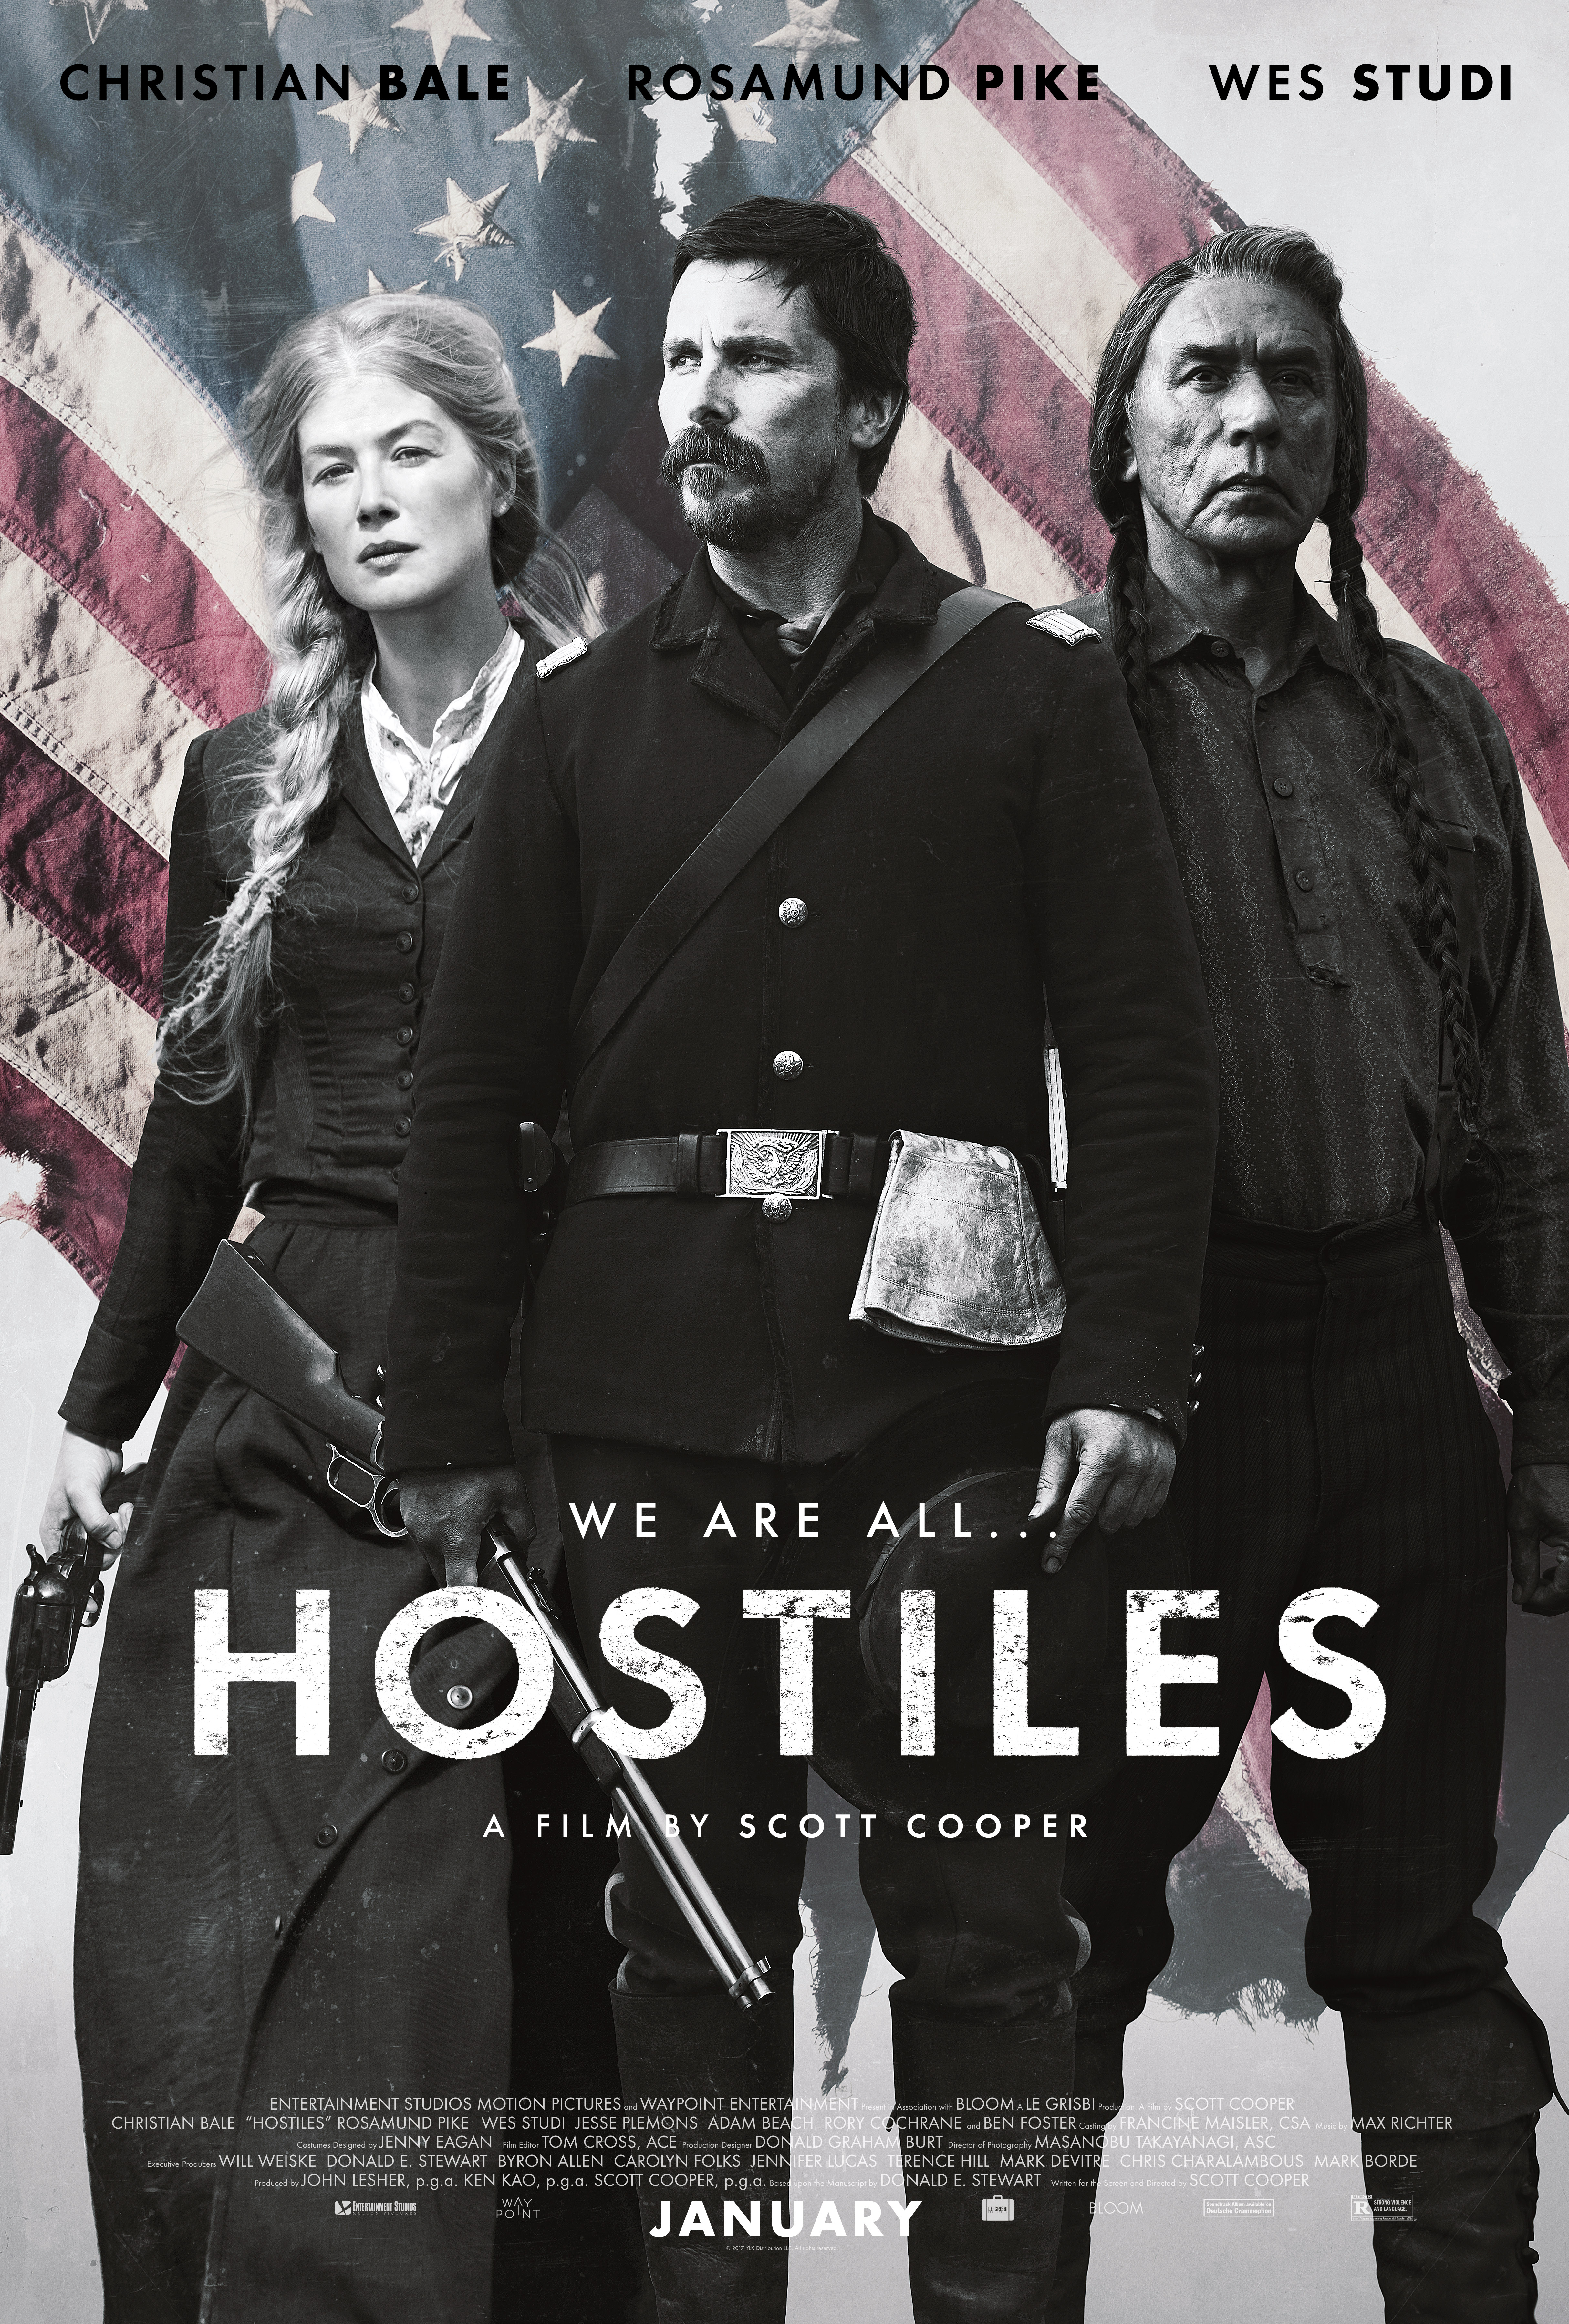 Nonton film Hostiles layarkaca21 indoxx1 ganool online streaming terbaru